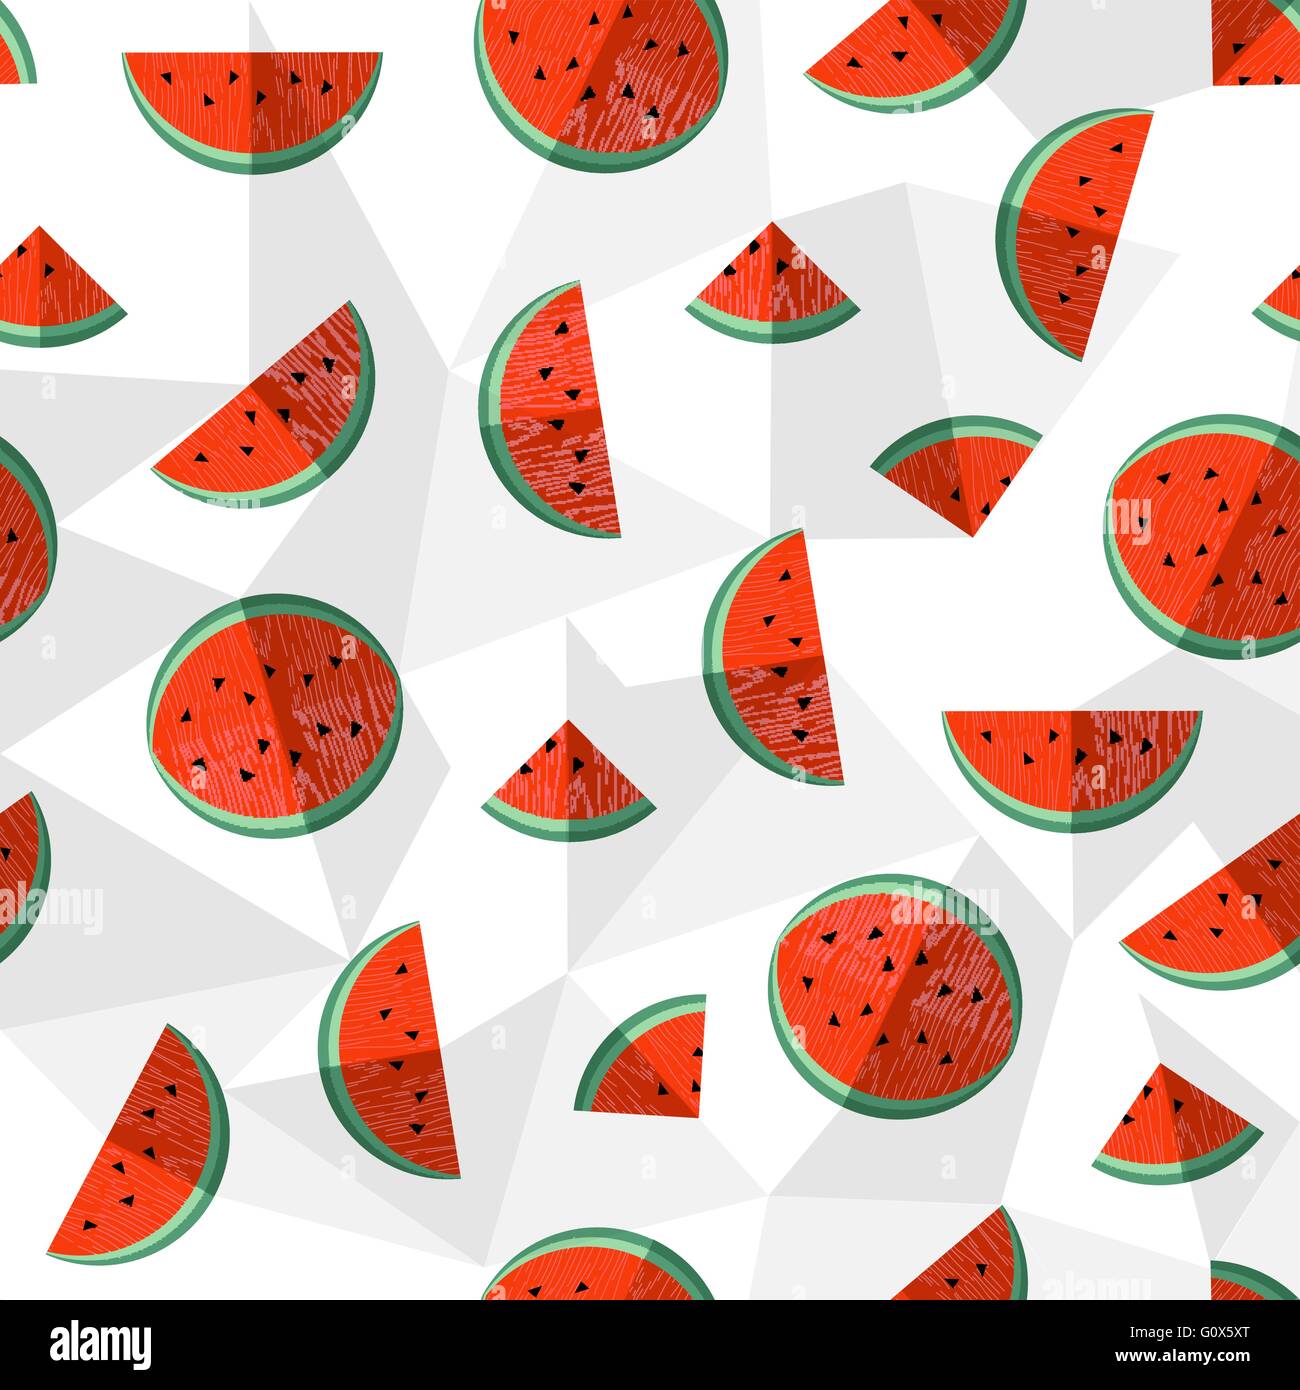 Wassermelone Konzept Musterdesign Hintergrund mit bunten Sommer Früchte Illustration. EPS10 Vektor. Stock Vektor